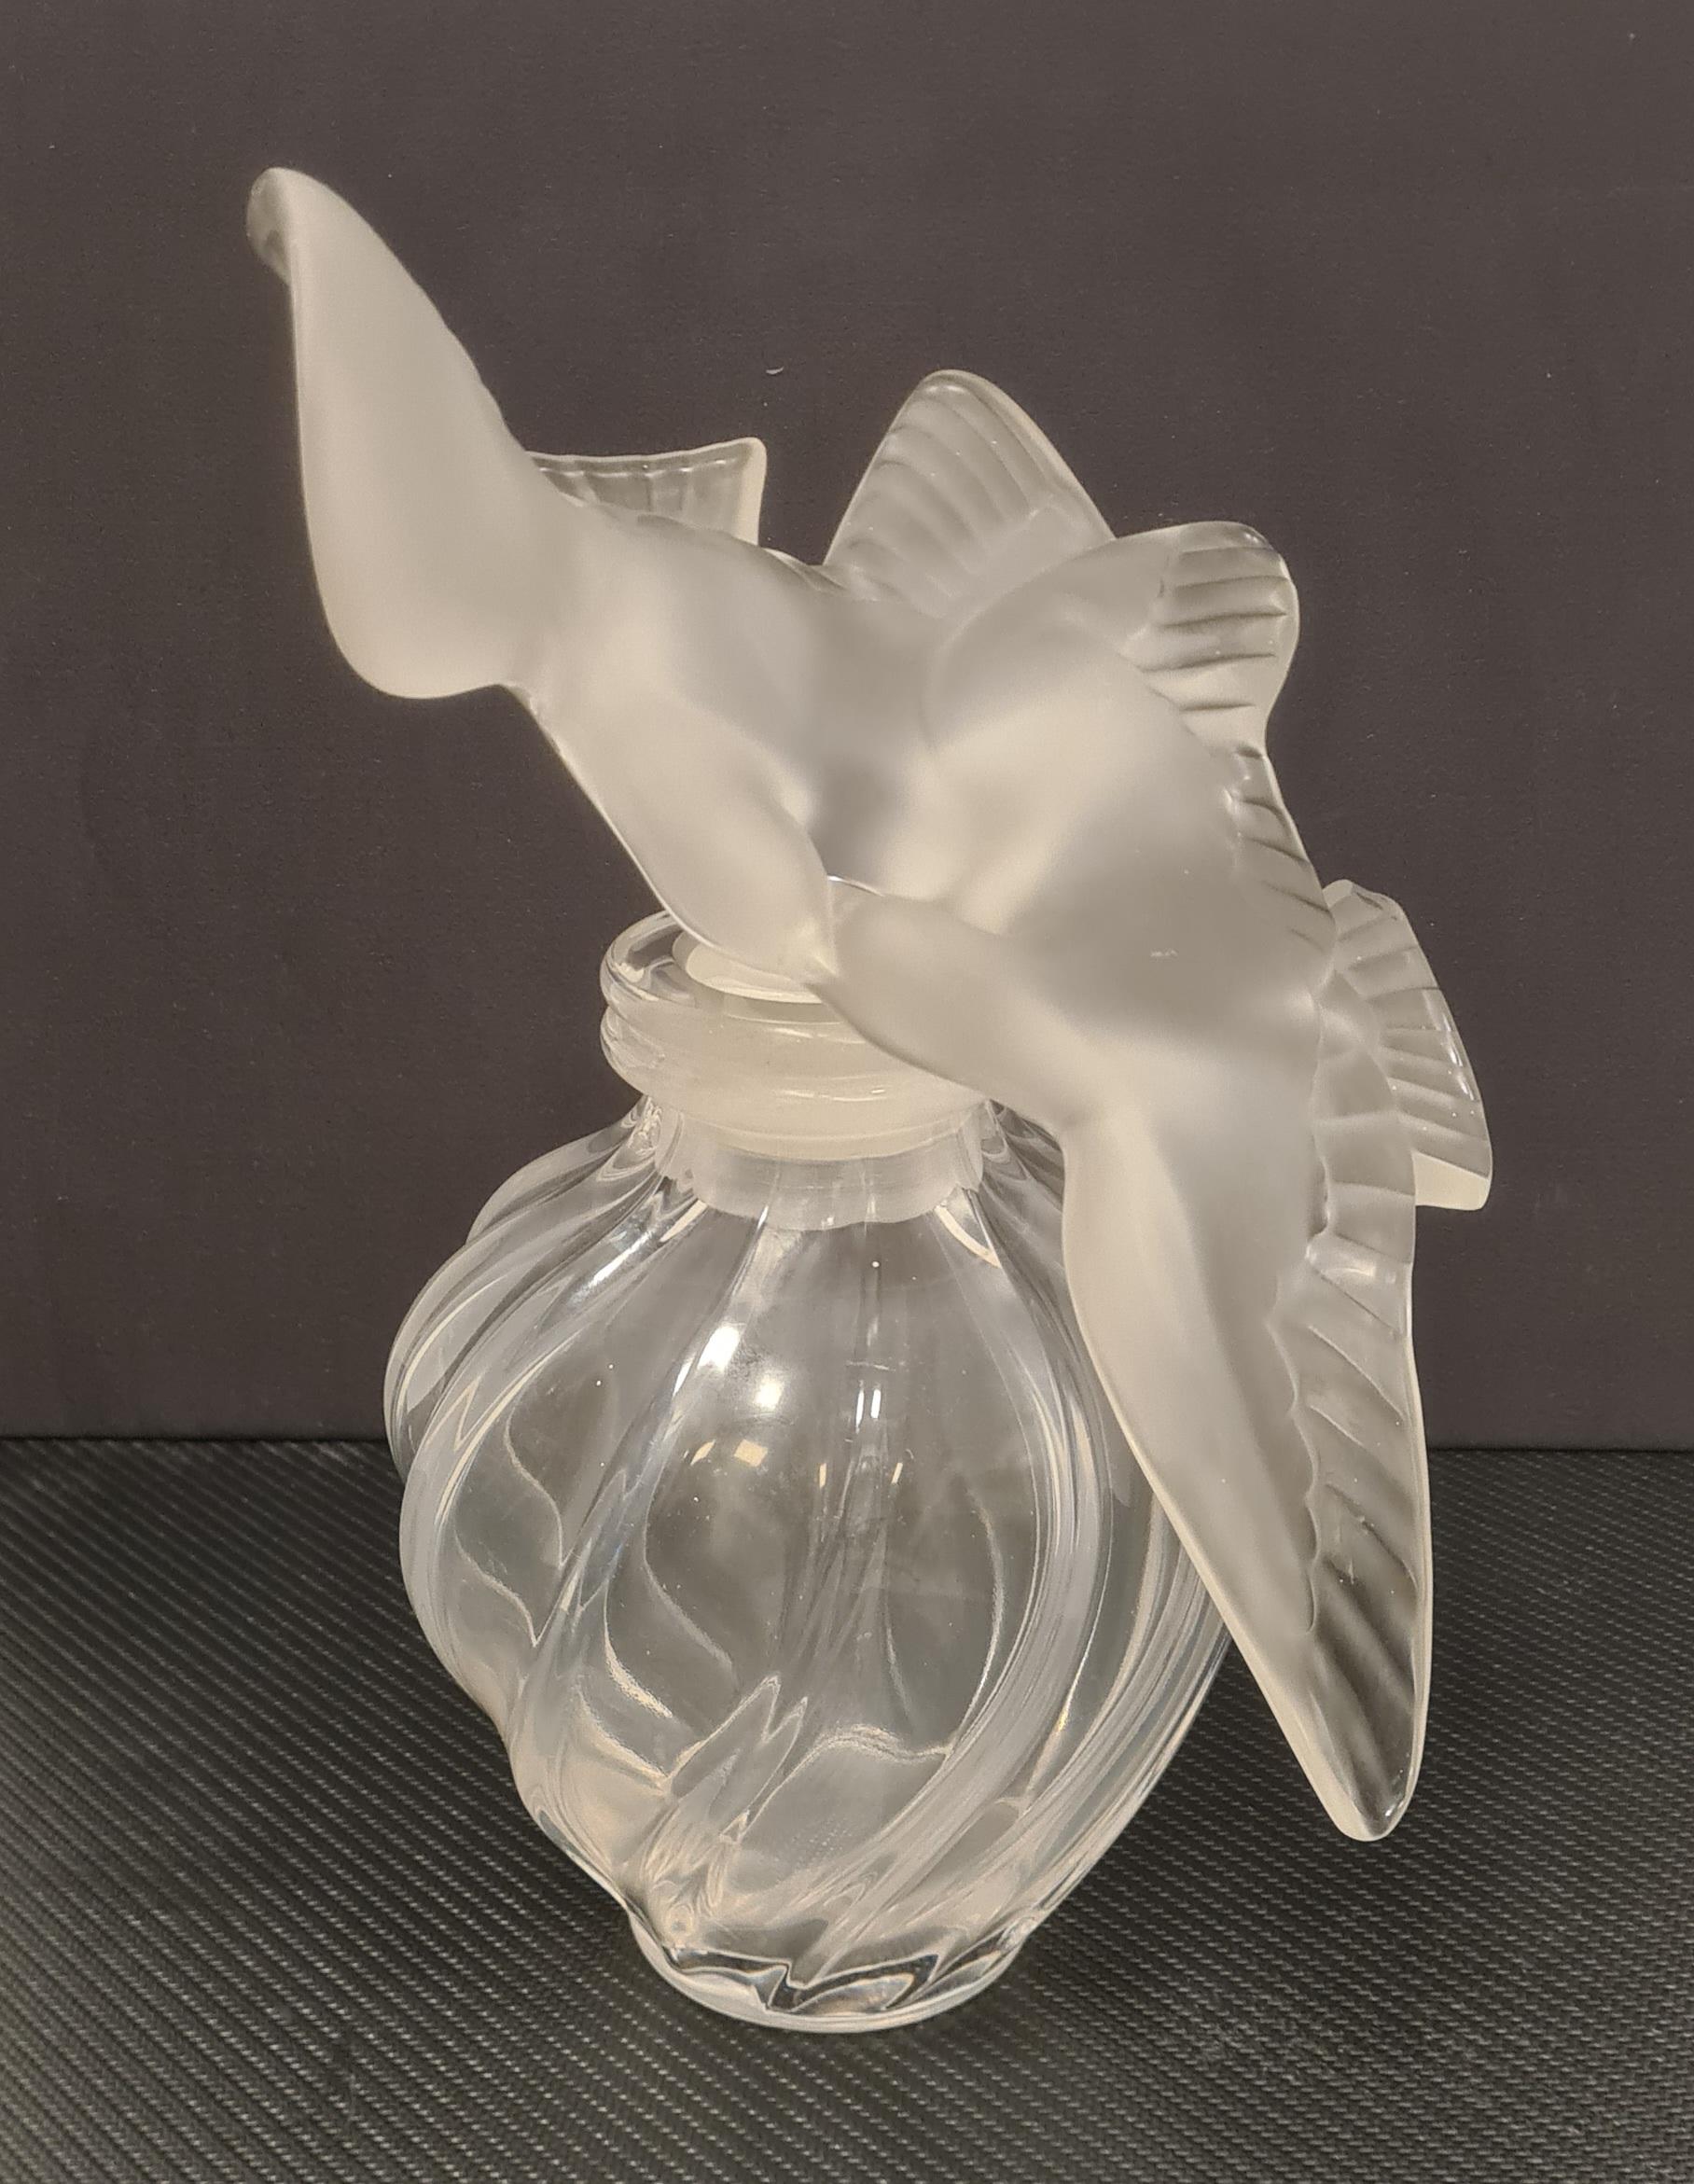 Grand flacon de collection fabriqué par la verrerie française Lalique.

Flacon contenant le parfum 